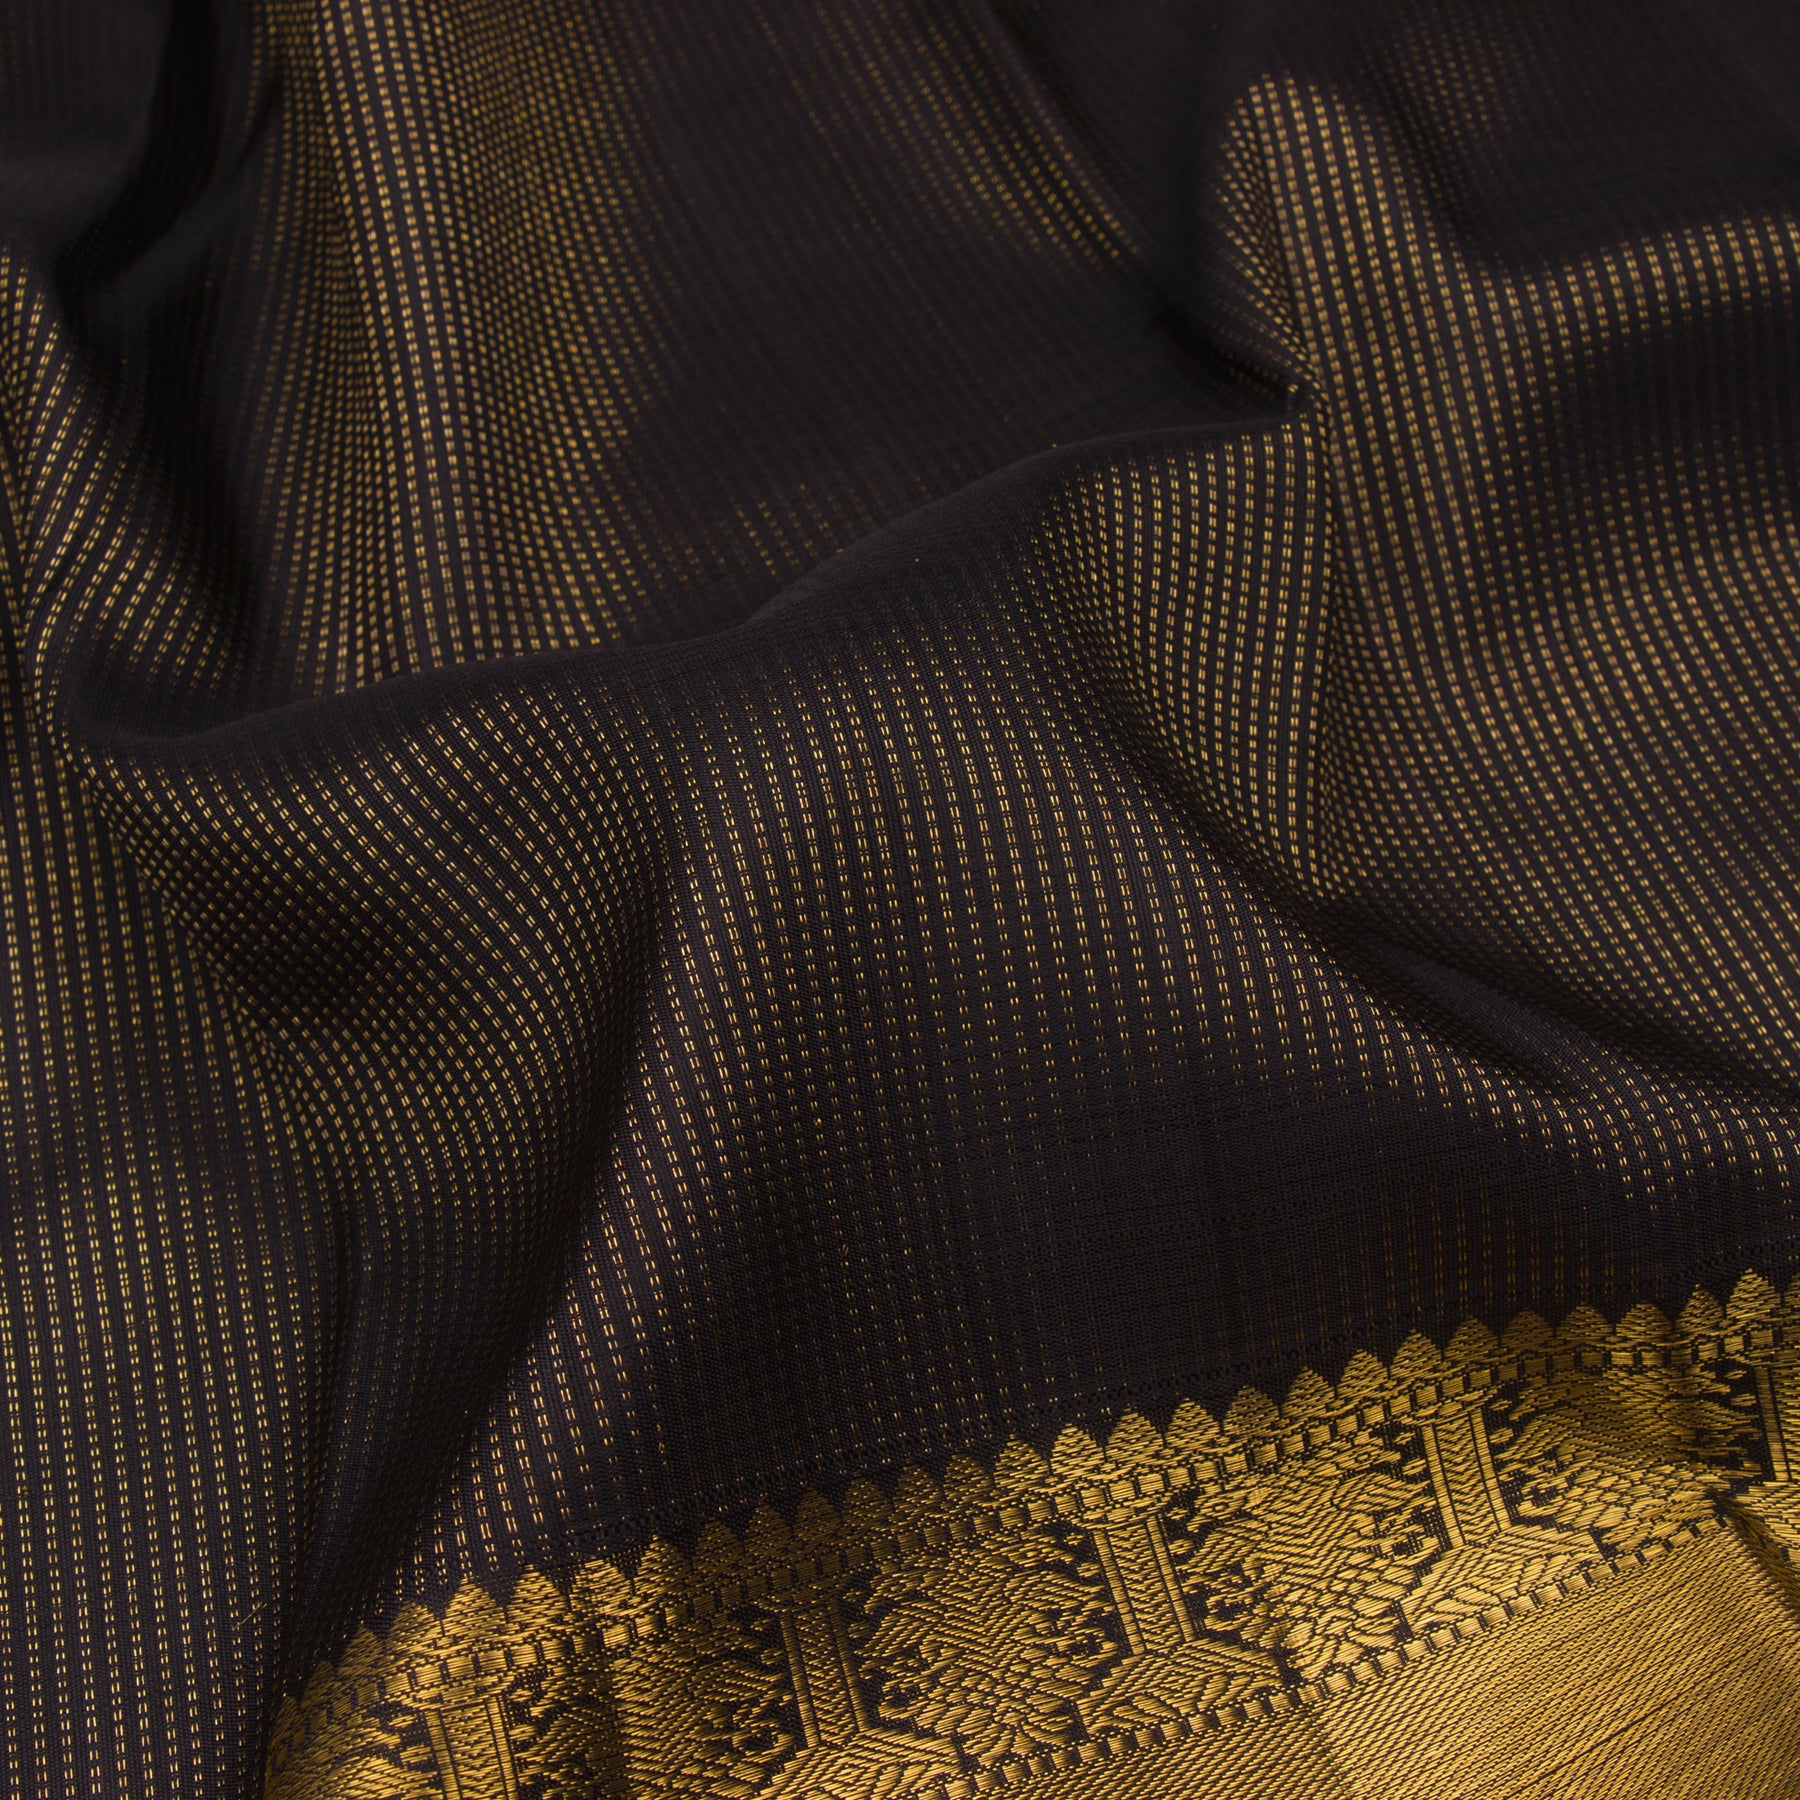 Kanakavalli Kanjivaram Silk Sari 23-599-HS001-11207 - Fabric View